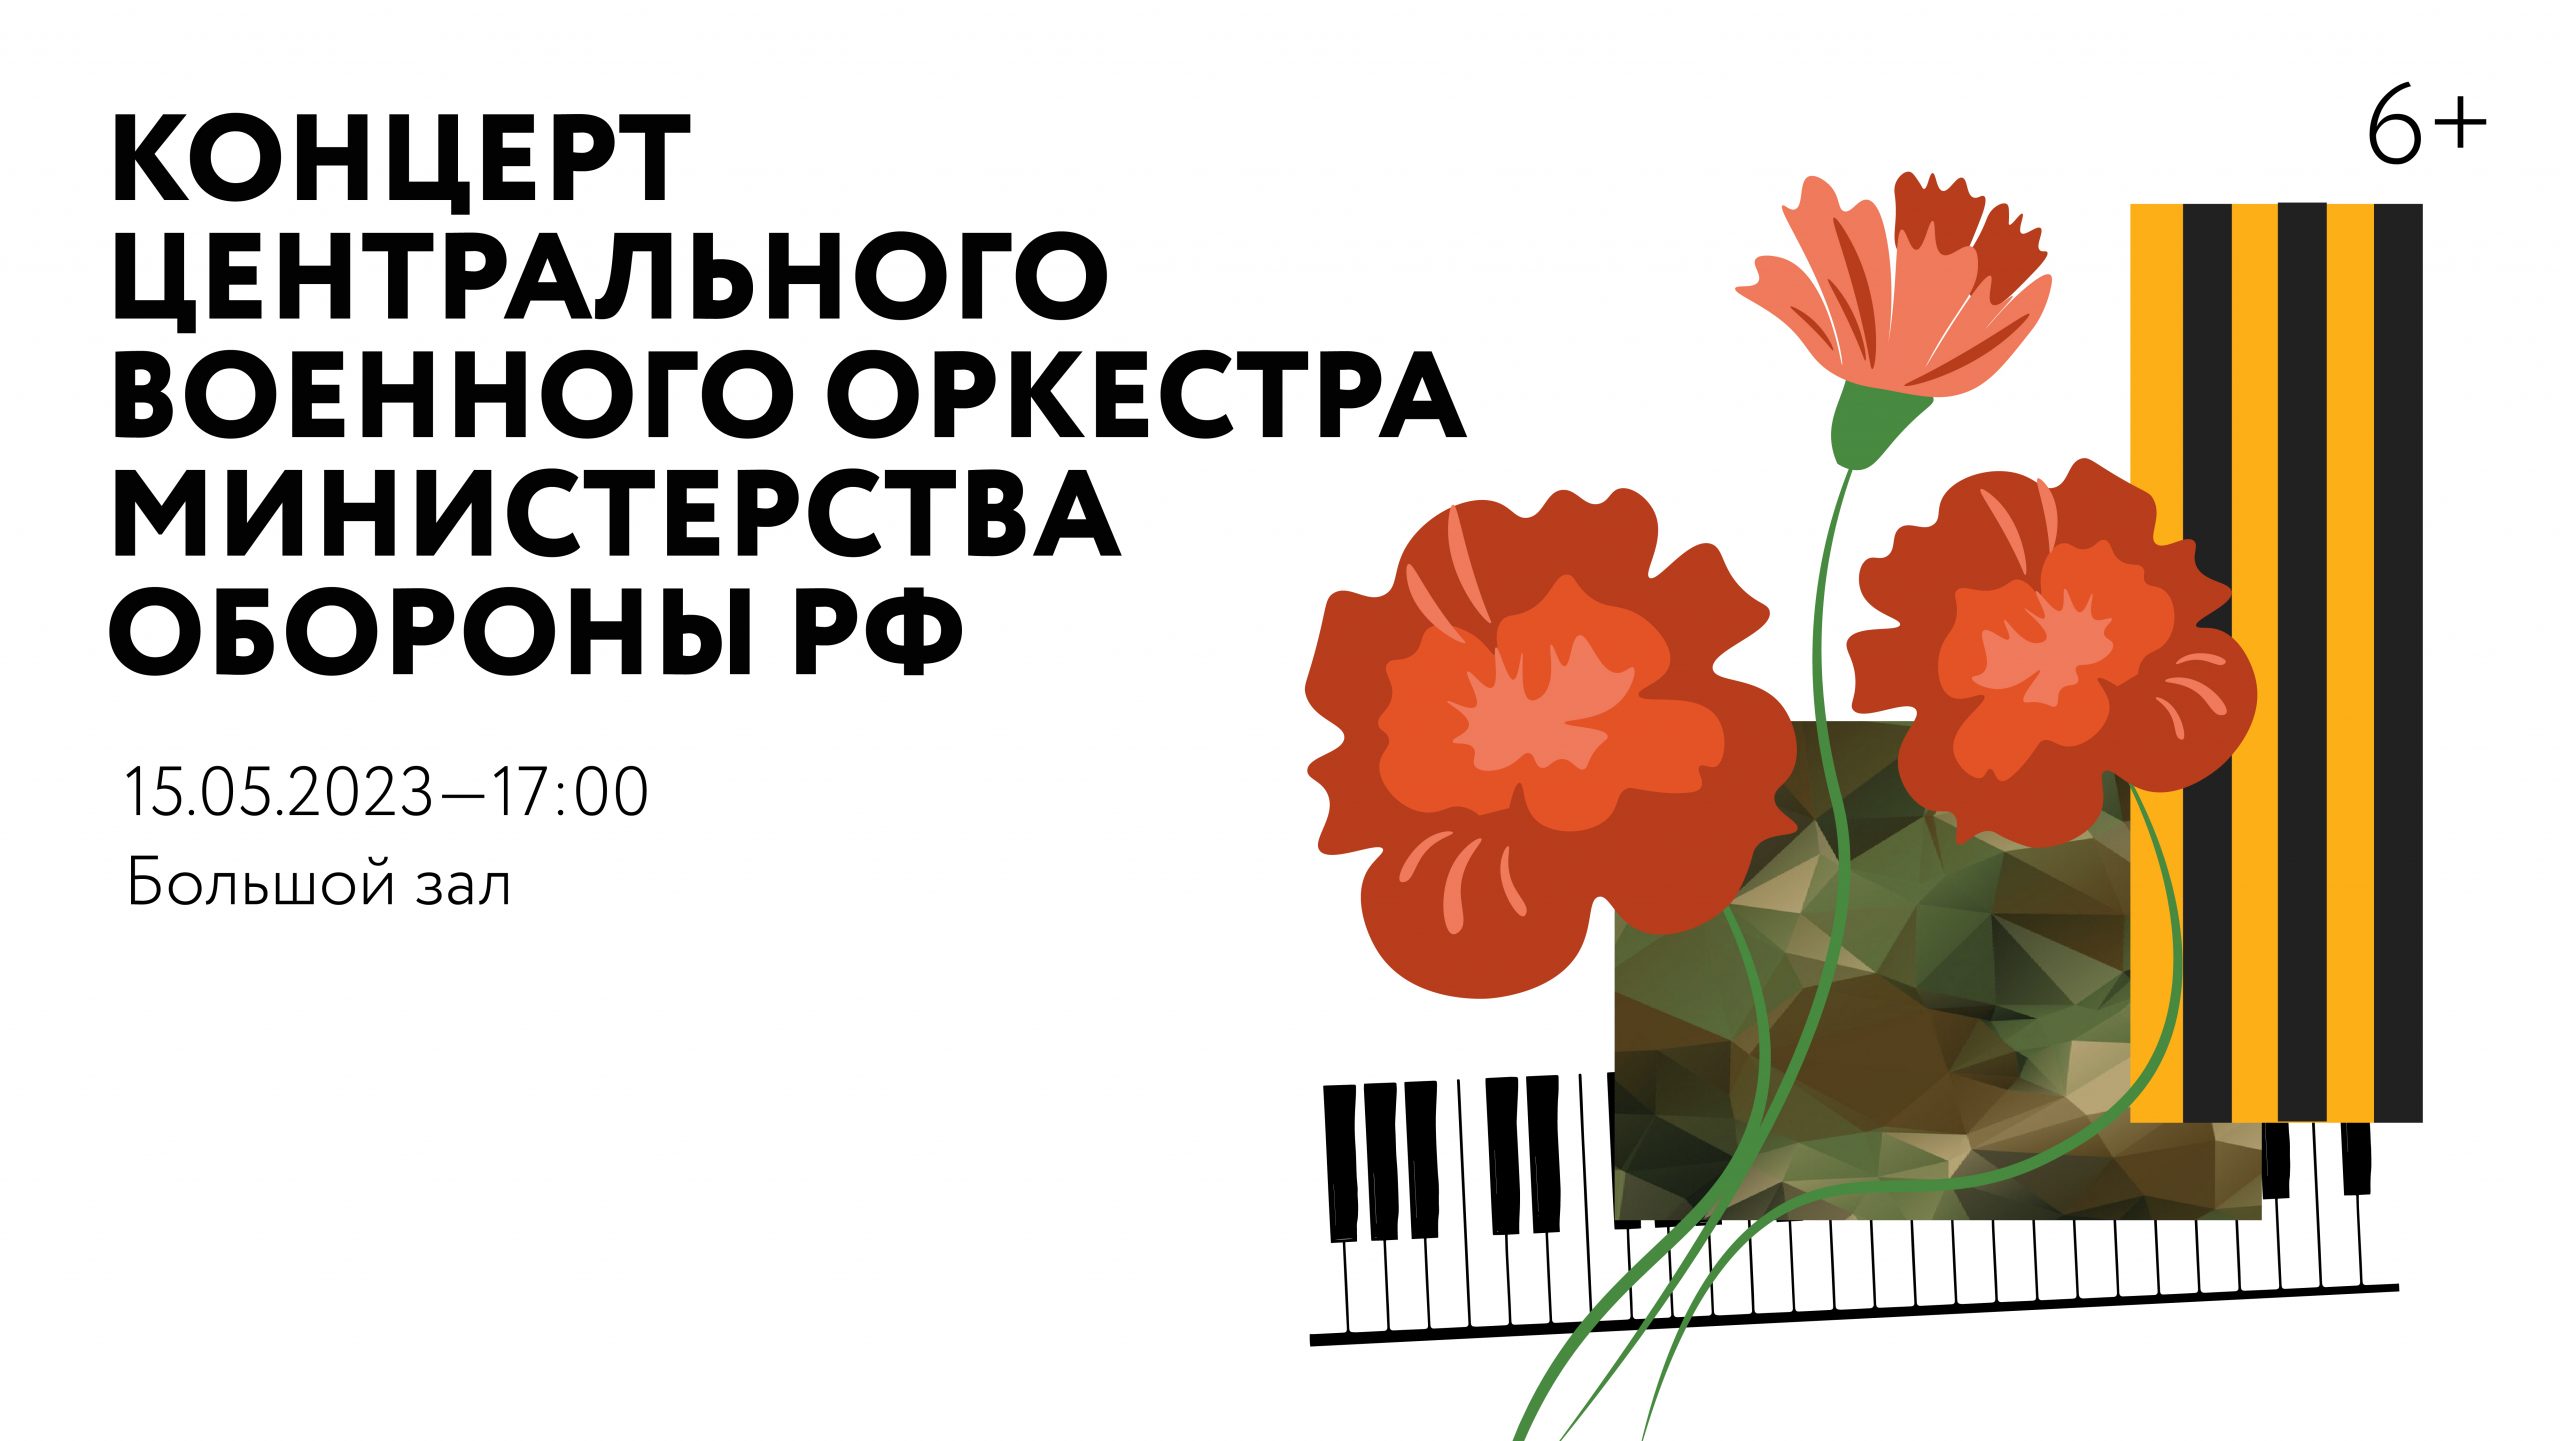 Концерт Центрального военного оркестра Министерства обороны РФ